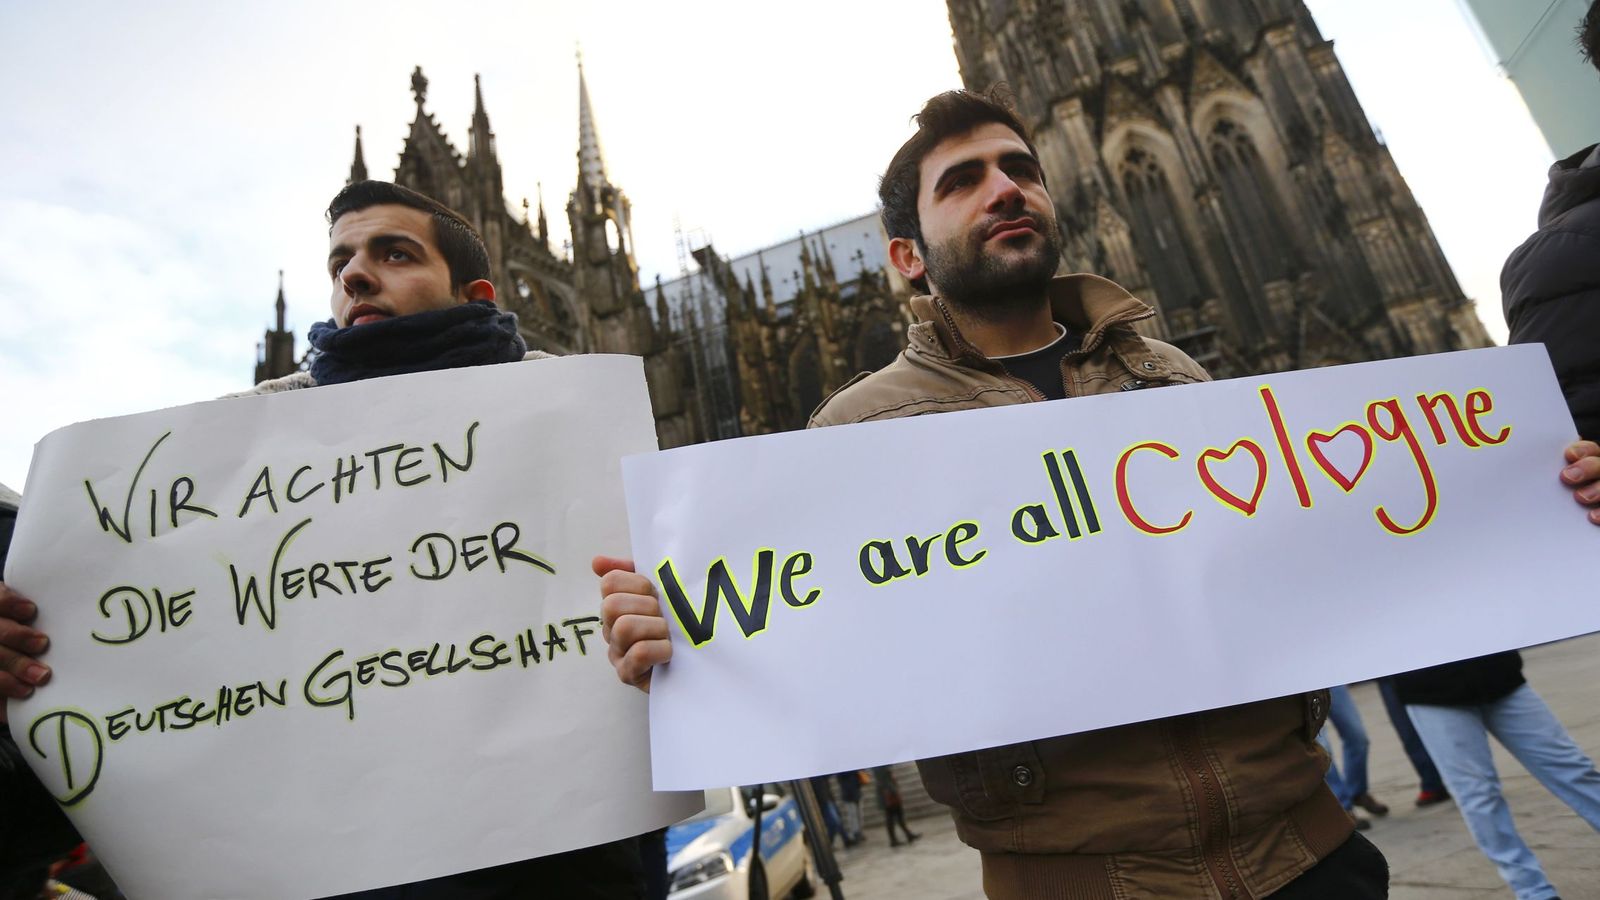 Foto: Sirios sostienen pancartas contra las agresiones durante una manifestación en Colonia, el 16 de enero de 2016 (Reuters).